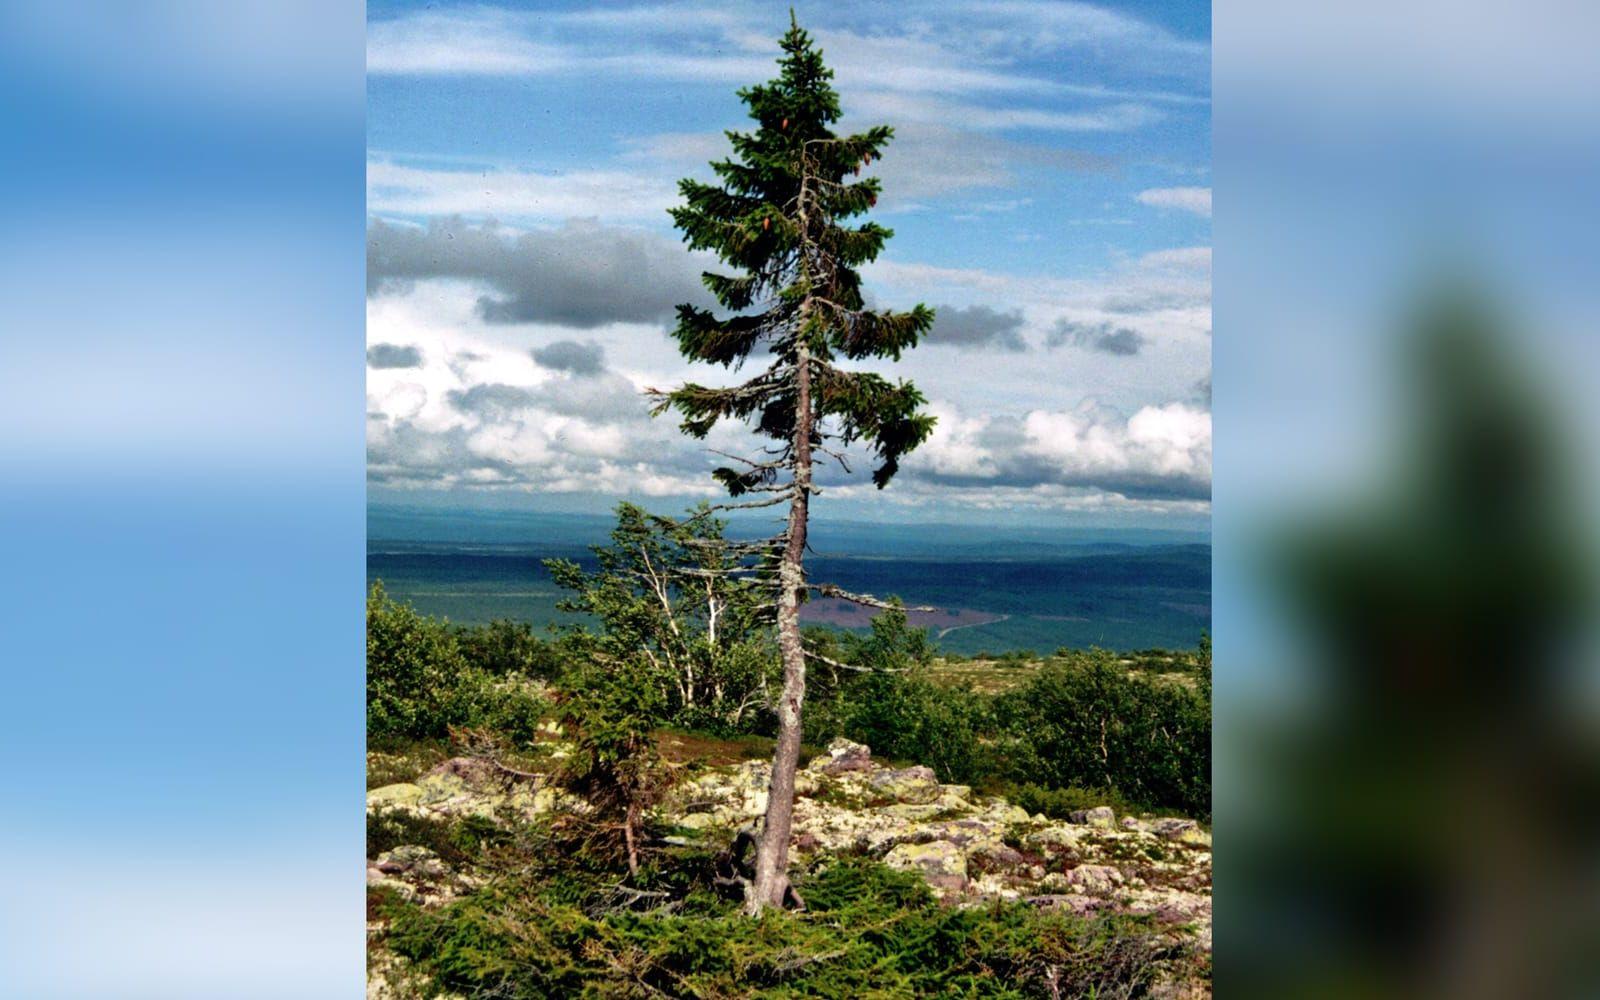 <strong>VÄRLDENS ÄLDSTA TRÄD.</strong> Det äldsta trädet tros vara "Old Tjikko” som står på Fulufjället i Dalarna. Med hjälp av kol14-datering har man slagit fast att det är 9550 år gammalt. FOTO: Wikipedia